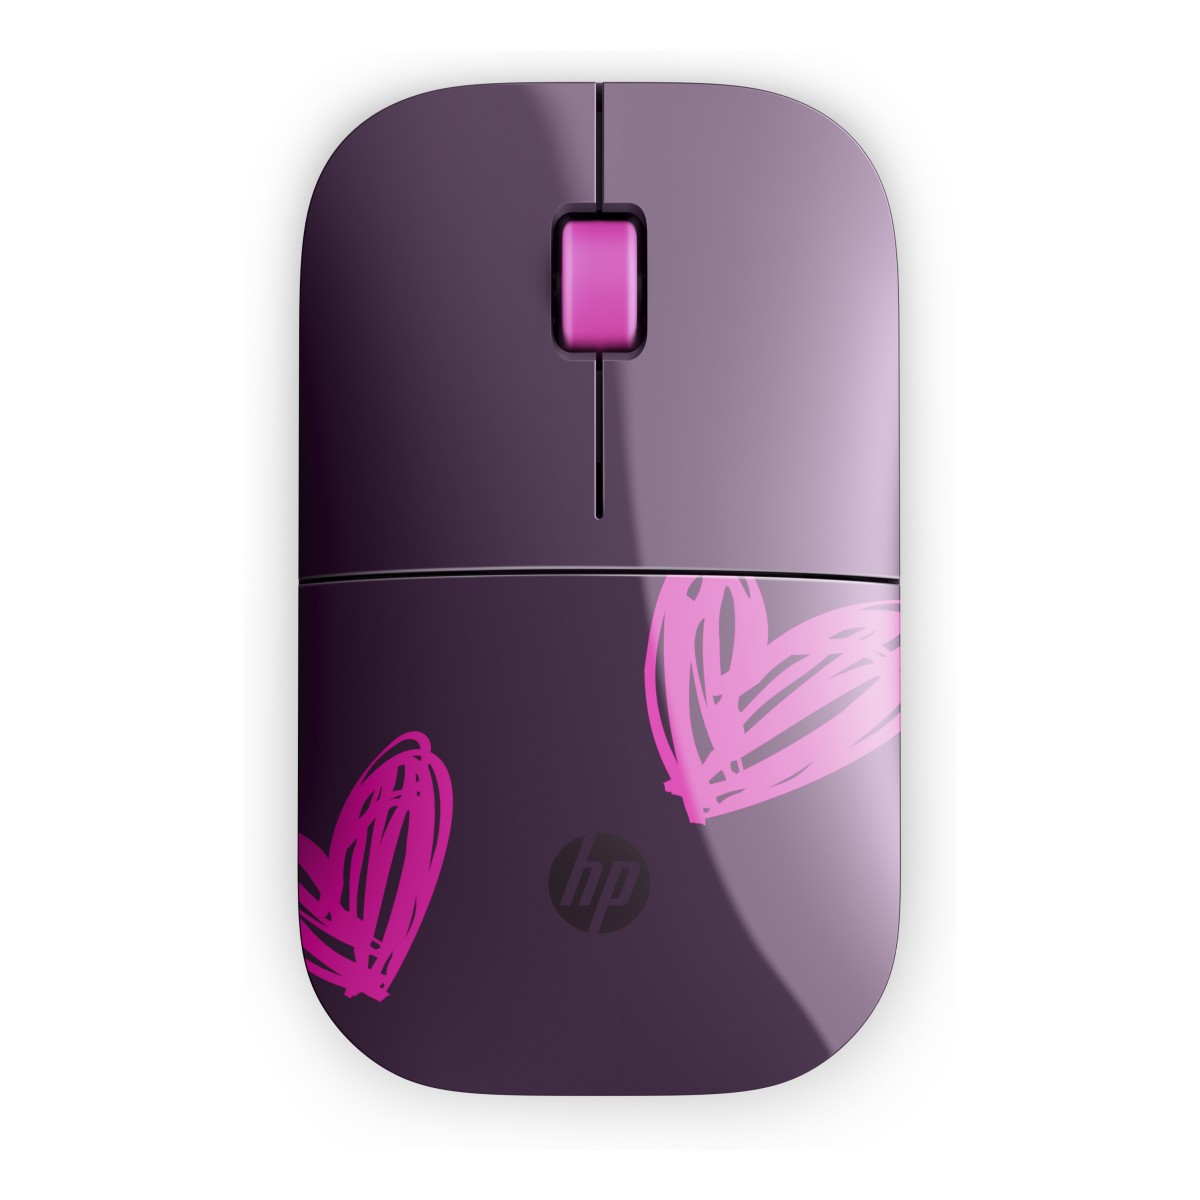 Bezdrátová myš HP Z3700 - hearts (1CA96AA)